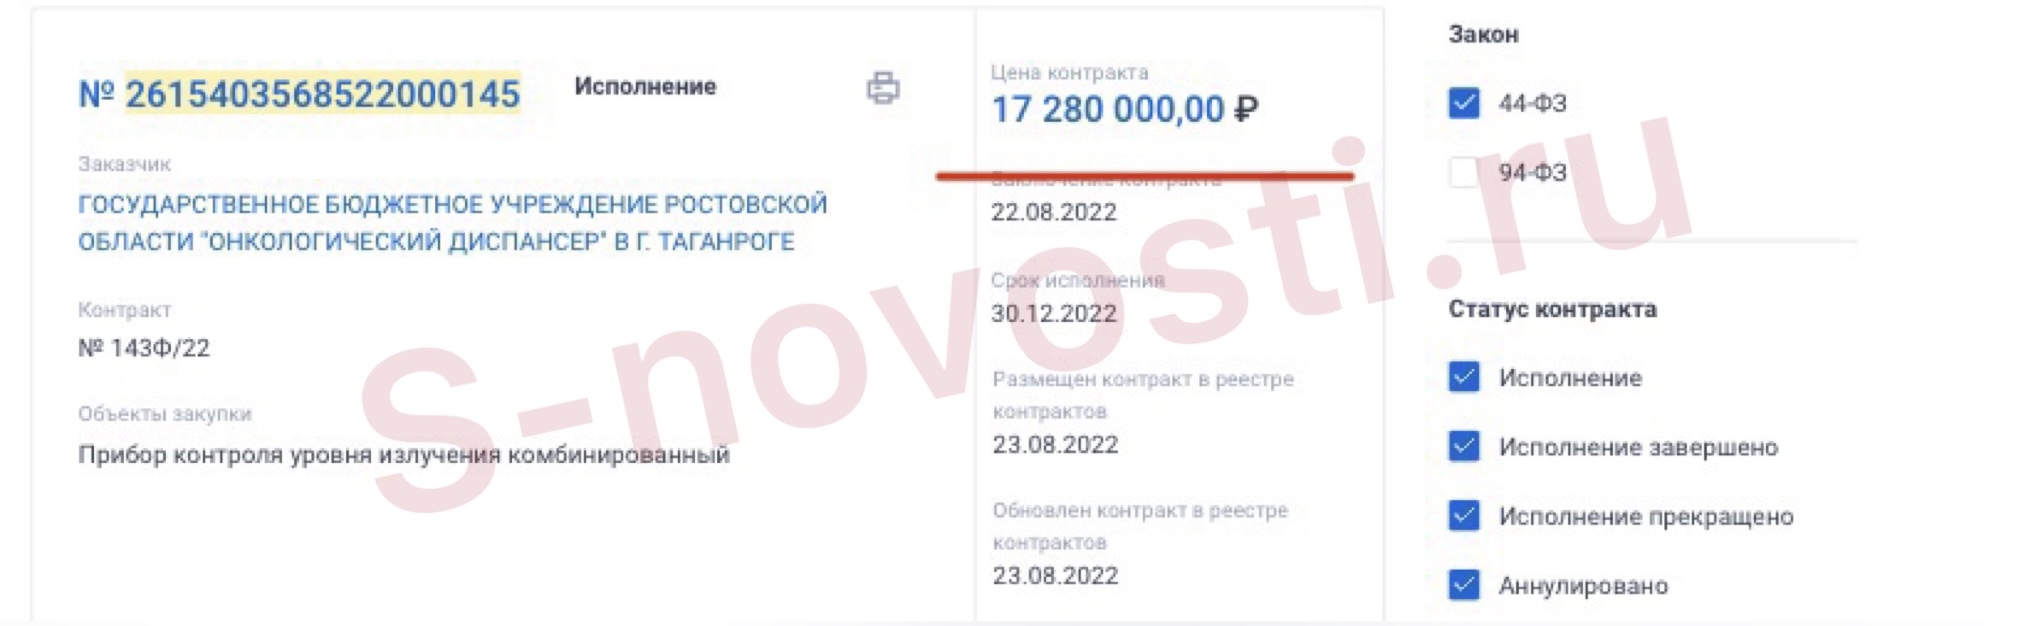 Онкодиспансер в Таганроге закупил то же оборудование за меньшую цену